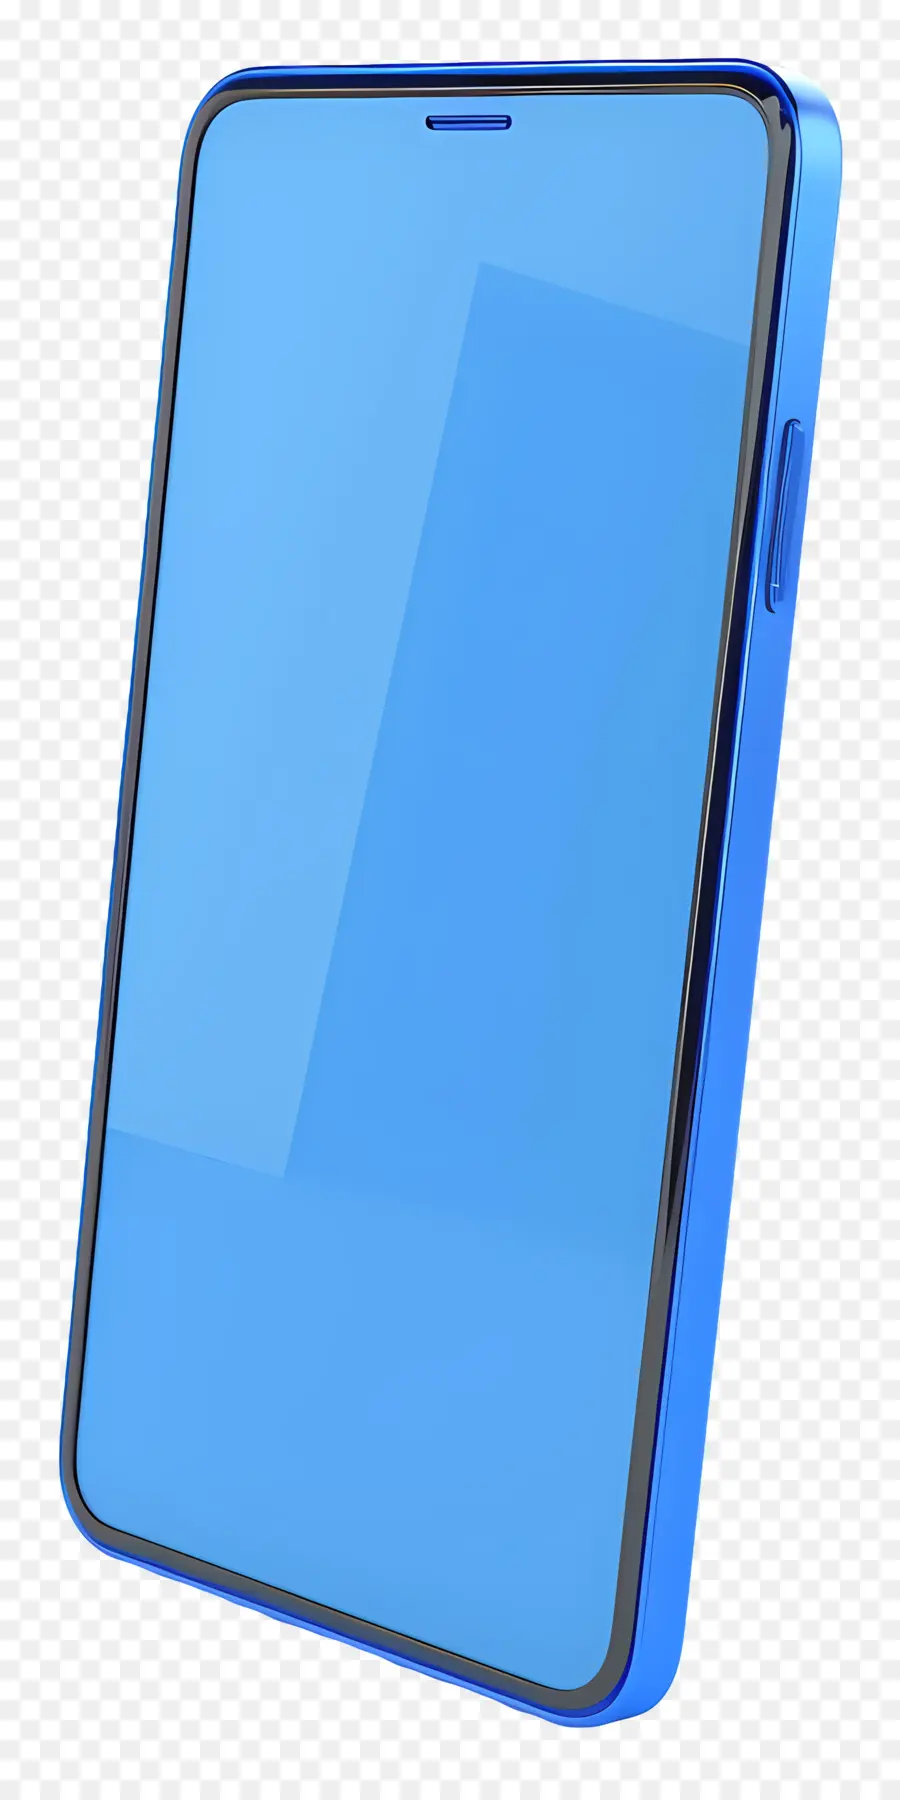 telaio in metallo - Smartphone blu con schermo di vetro e telaio in metallo